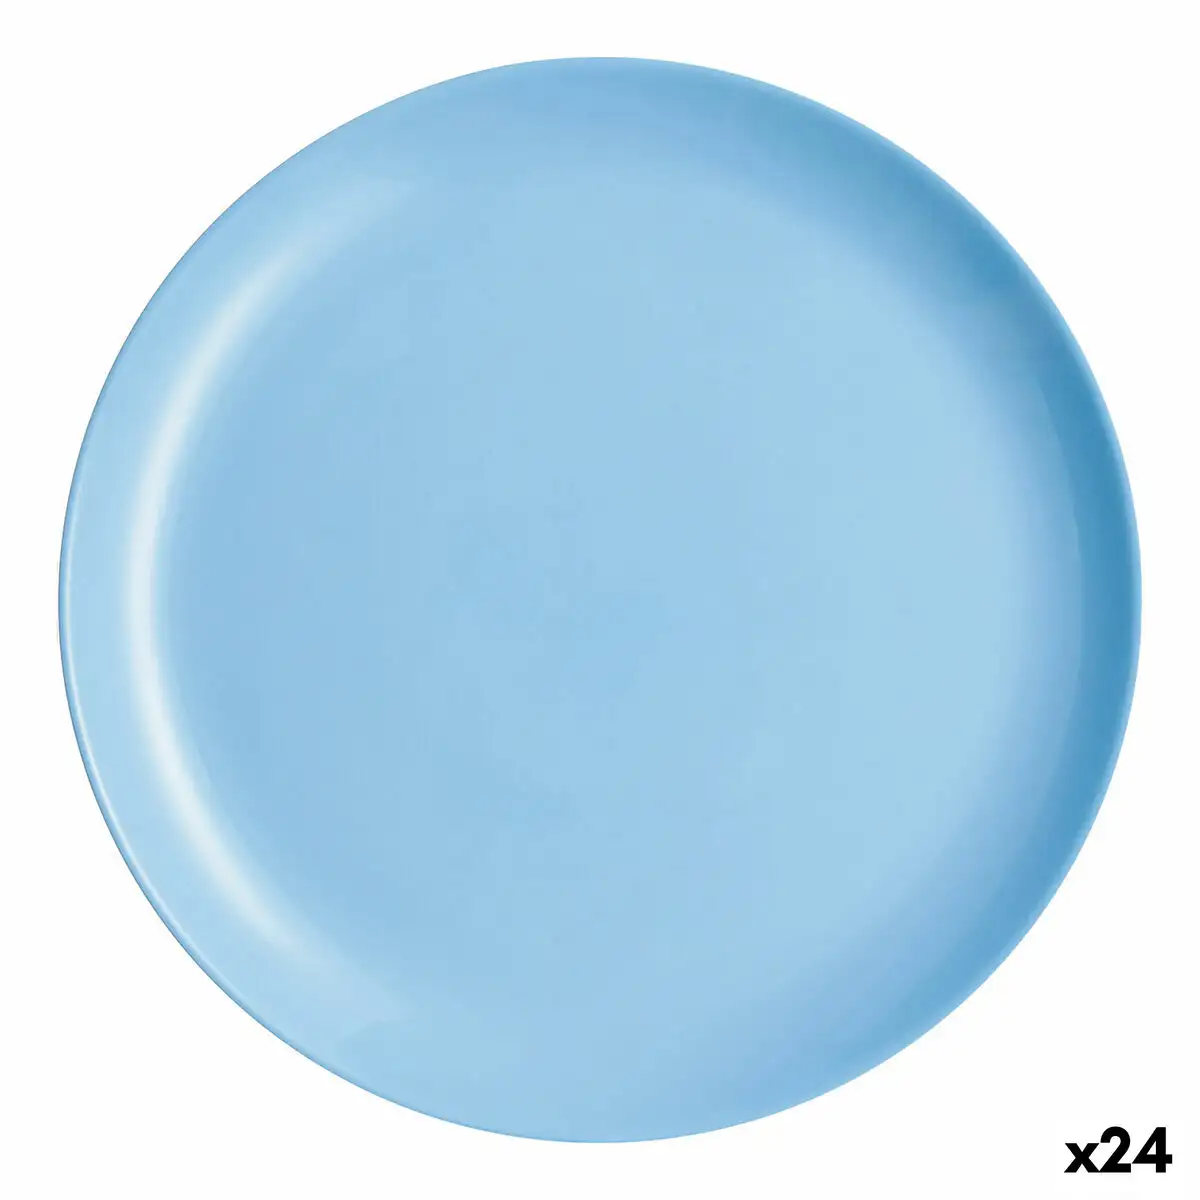 Assiette plate luminarc diwali bleu verre 25 cm 24 unites _5172. DIAYTAR SENEGAL - Votre Passage vers l'Élégance Abordable. Explorez notre collection où chaque produit est choisi pour sa qualité et son accessibilité, incarnant ainsi l'essence du Sénégal.